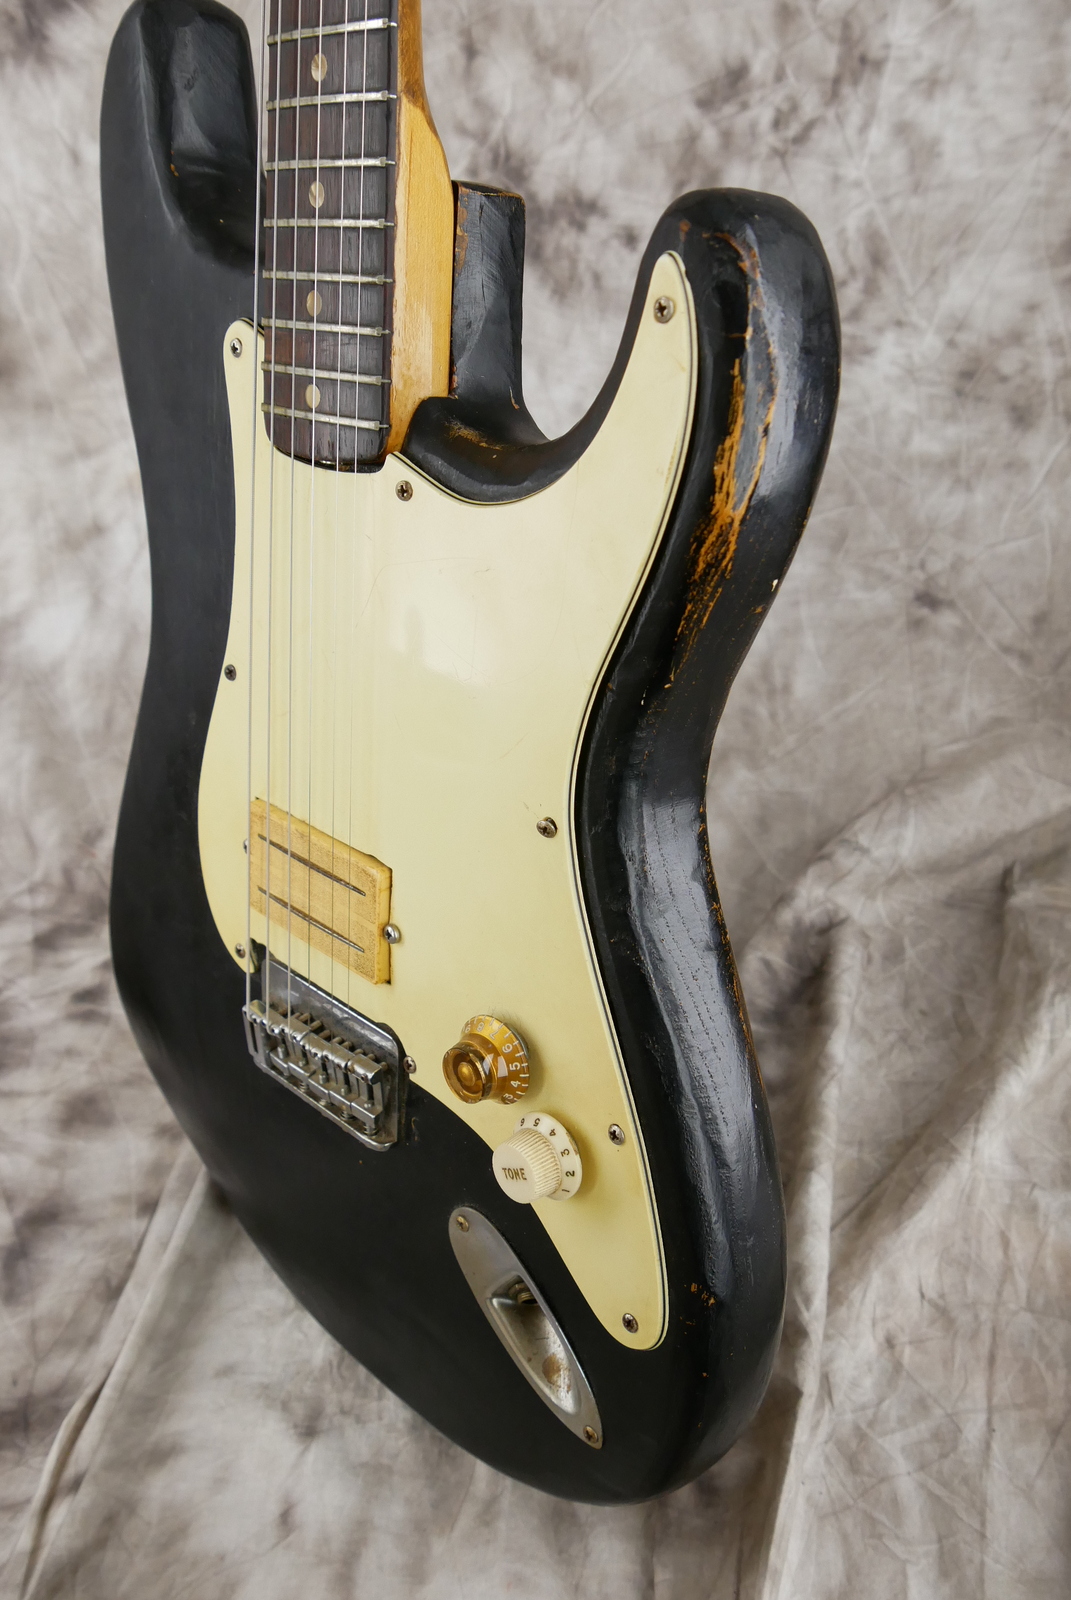 Fender_Stratocaster_one_humbucker_tinkered_black_1971_73-006.JPG